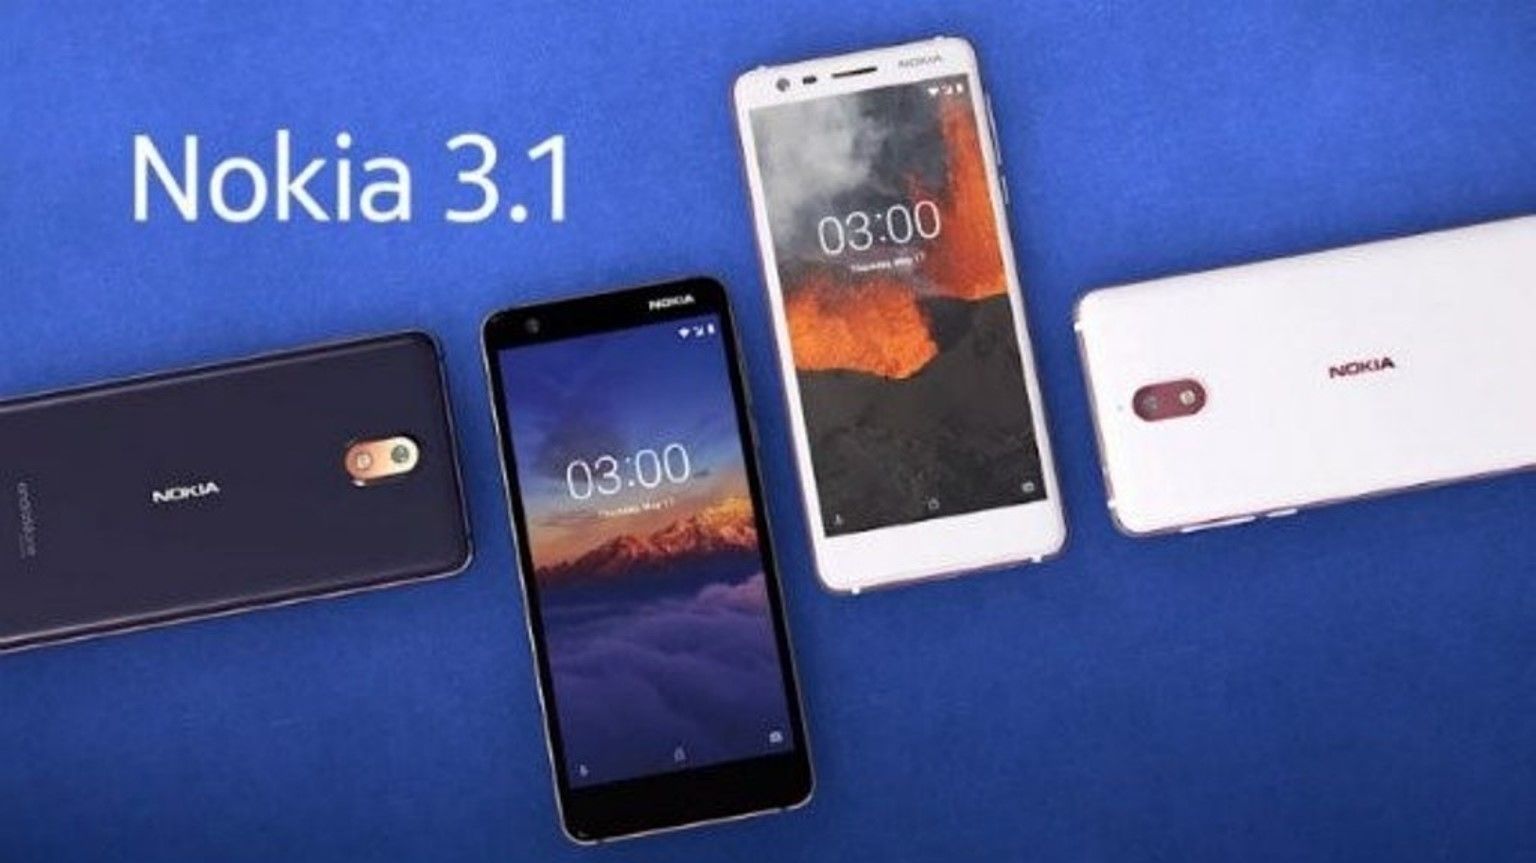 Smartphone Nokia 3.1 Plus - avantages et inconvénients